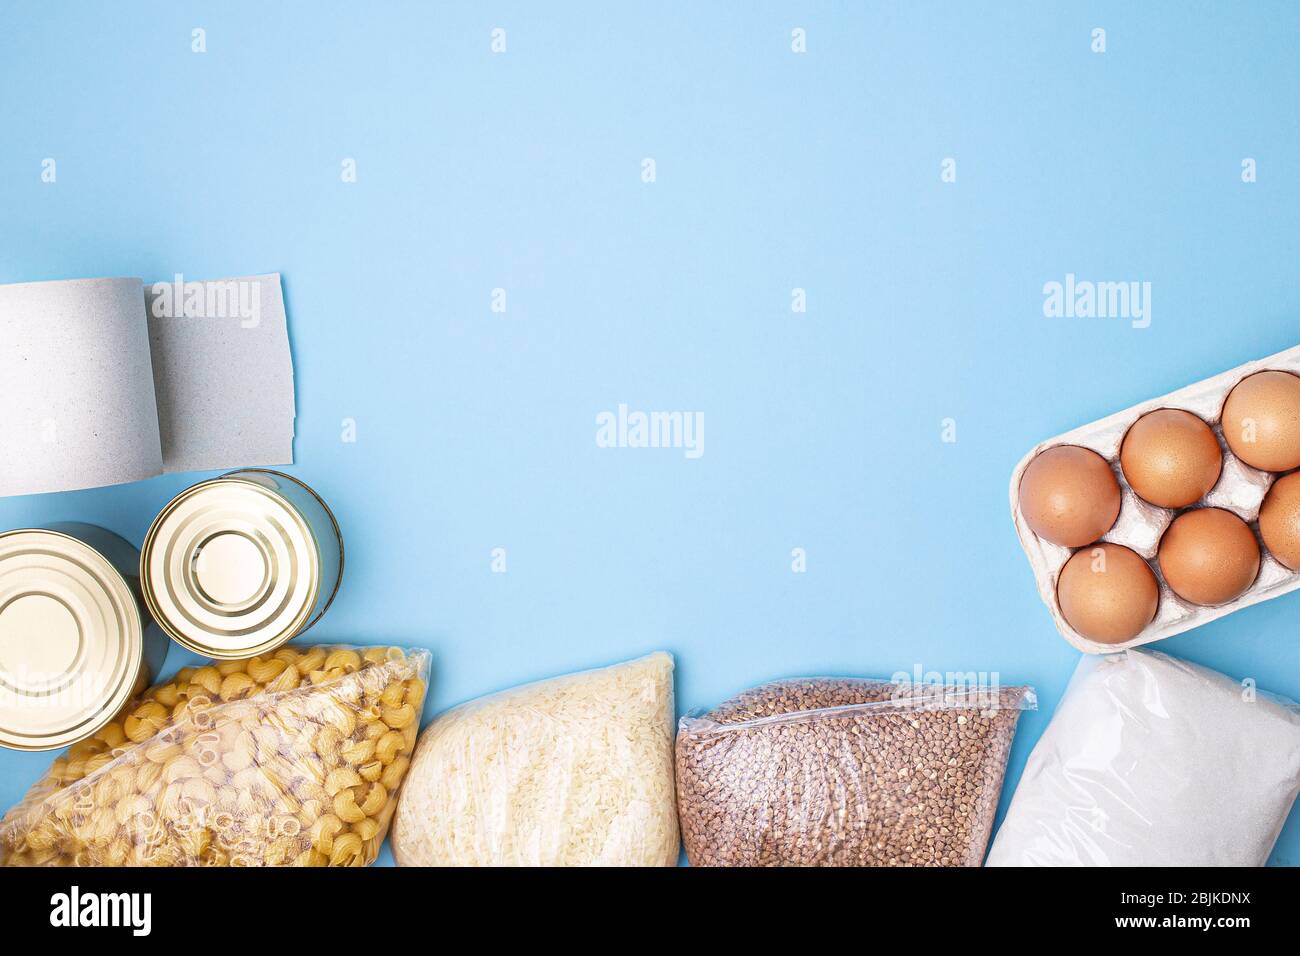 Lieferkost. Reis, Buchweizen, Nudeln, Dosenfutter, Zucker, Toilettenpapier auf blauem Hintergrund. Sammeln Sie freiwillig Lebensmittel. Spende, Coronavirus Quarantin Stockfoto